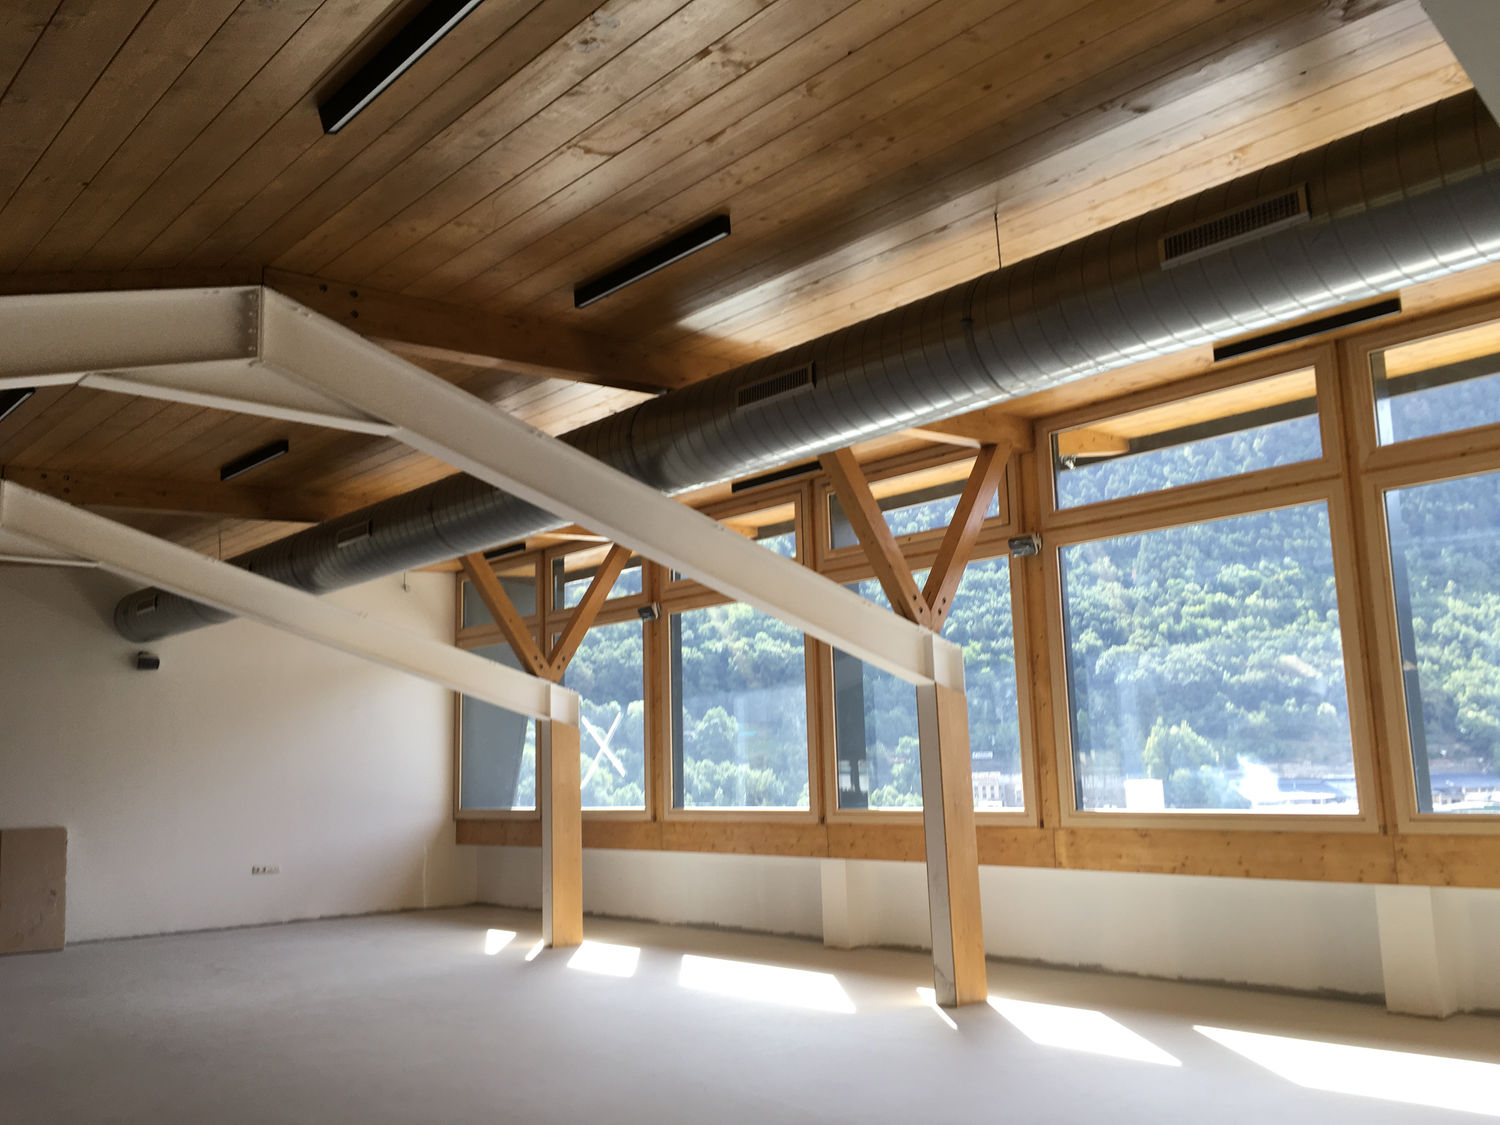 Reforma i ampliació de coberta amb Panells grans llums edifici Crei Andorra la vella